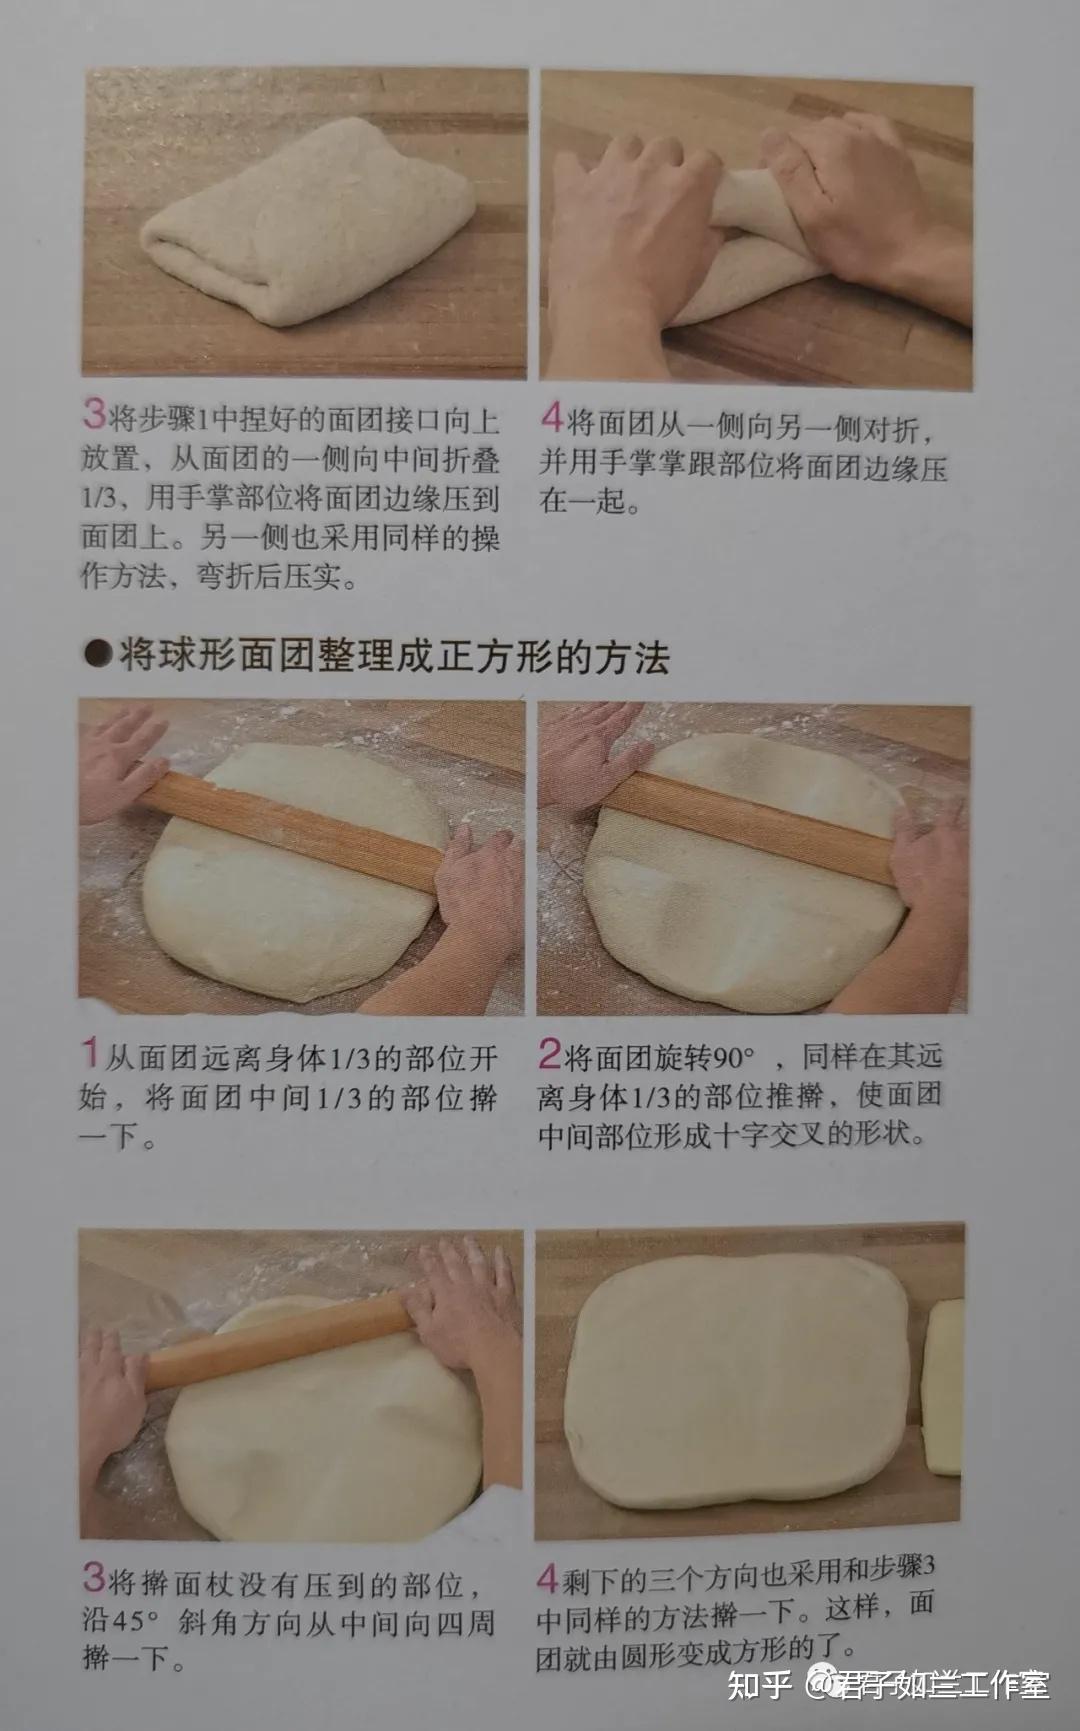 /面包制作流程/详解面包制作的几大流程，让你能真正的了解如何开始制作面包/ – 烤德香烘焙